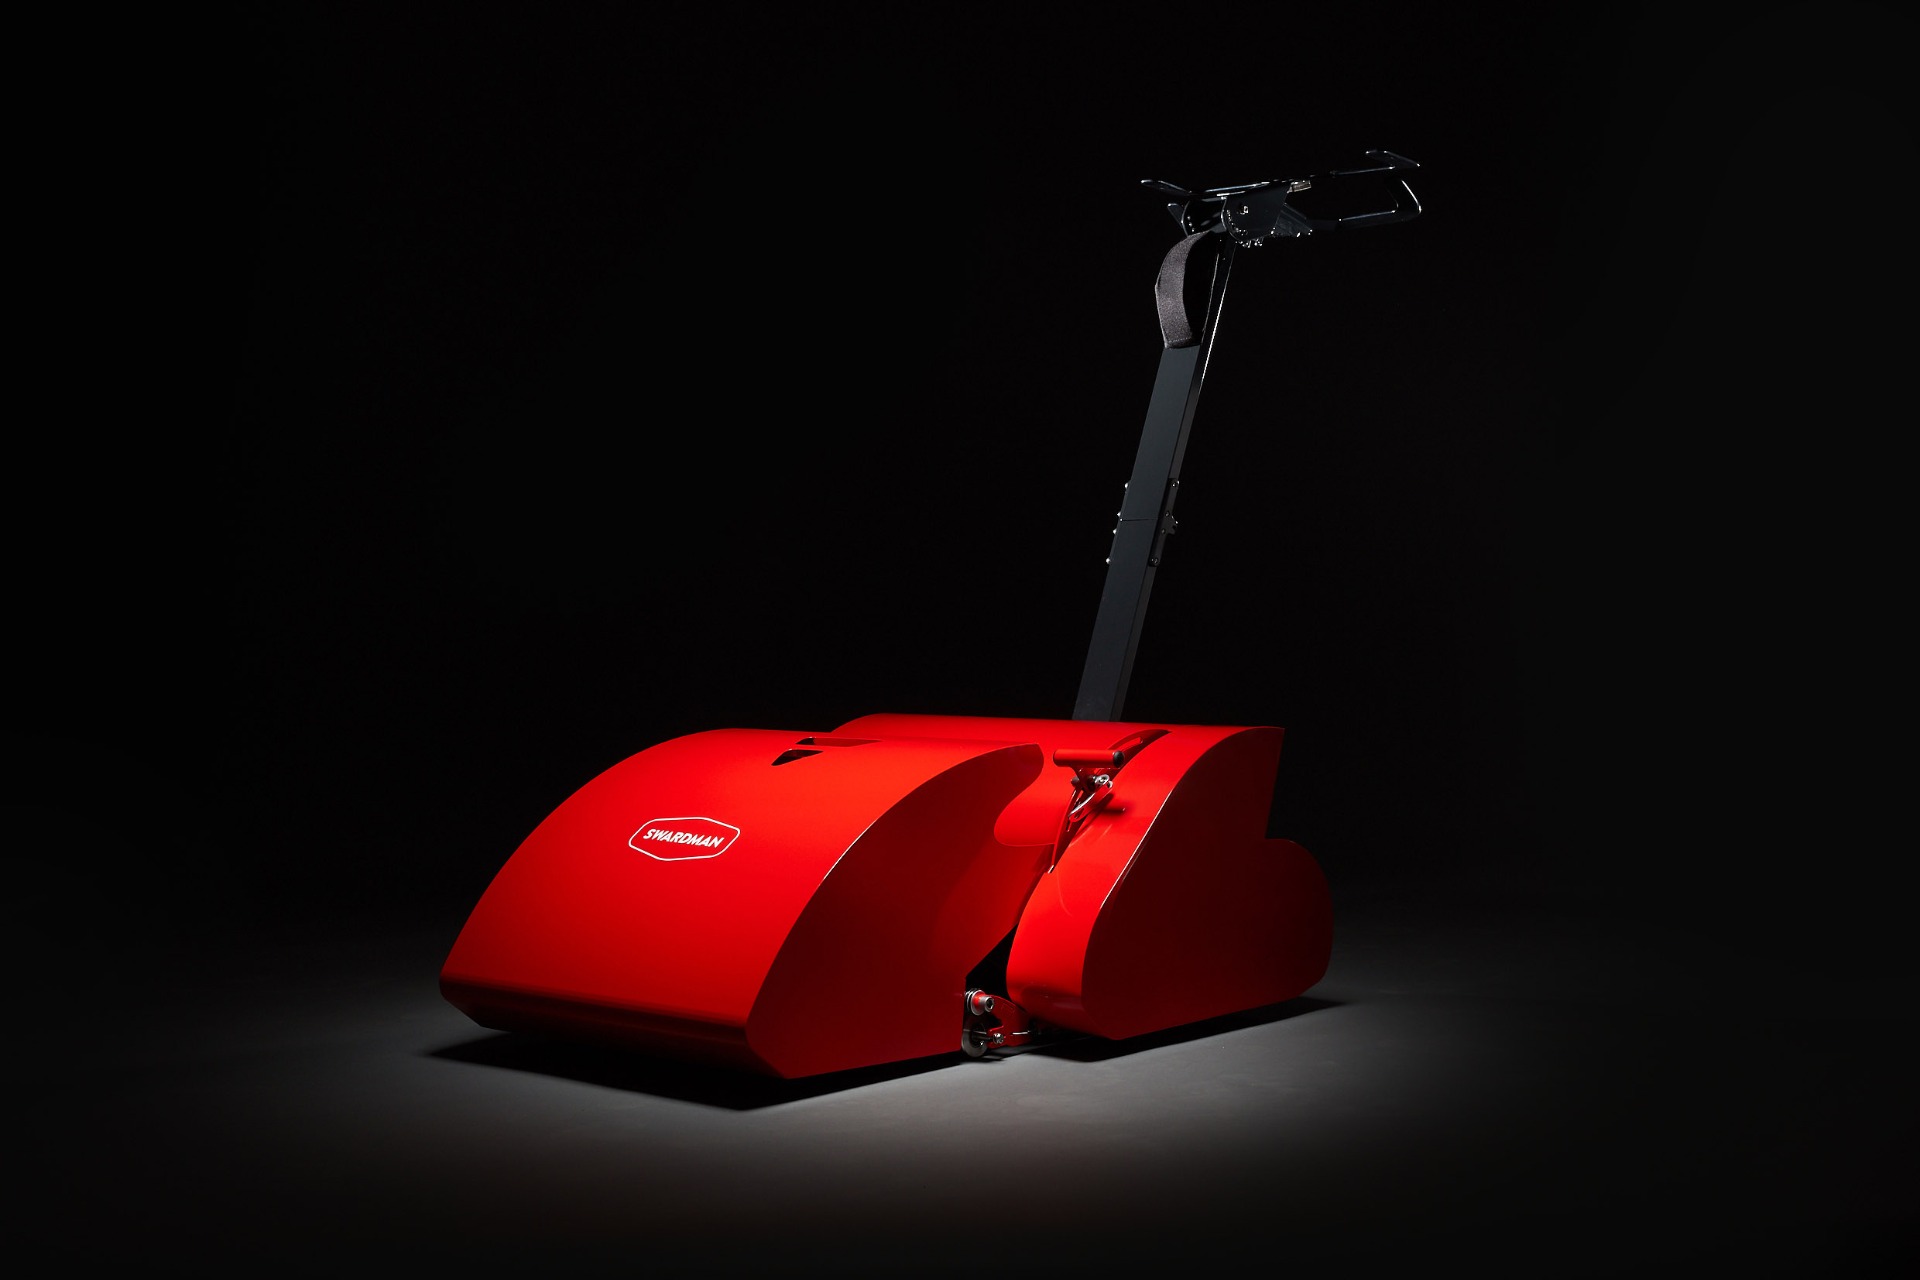 Electra Reel Mower 45 Cm (Battery) Red, Powered Reel Lawn Mower